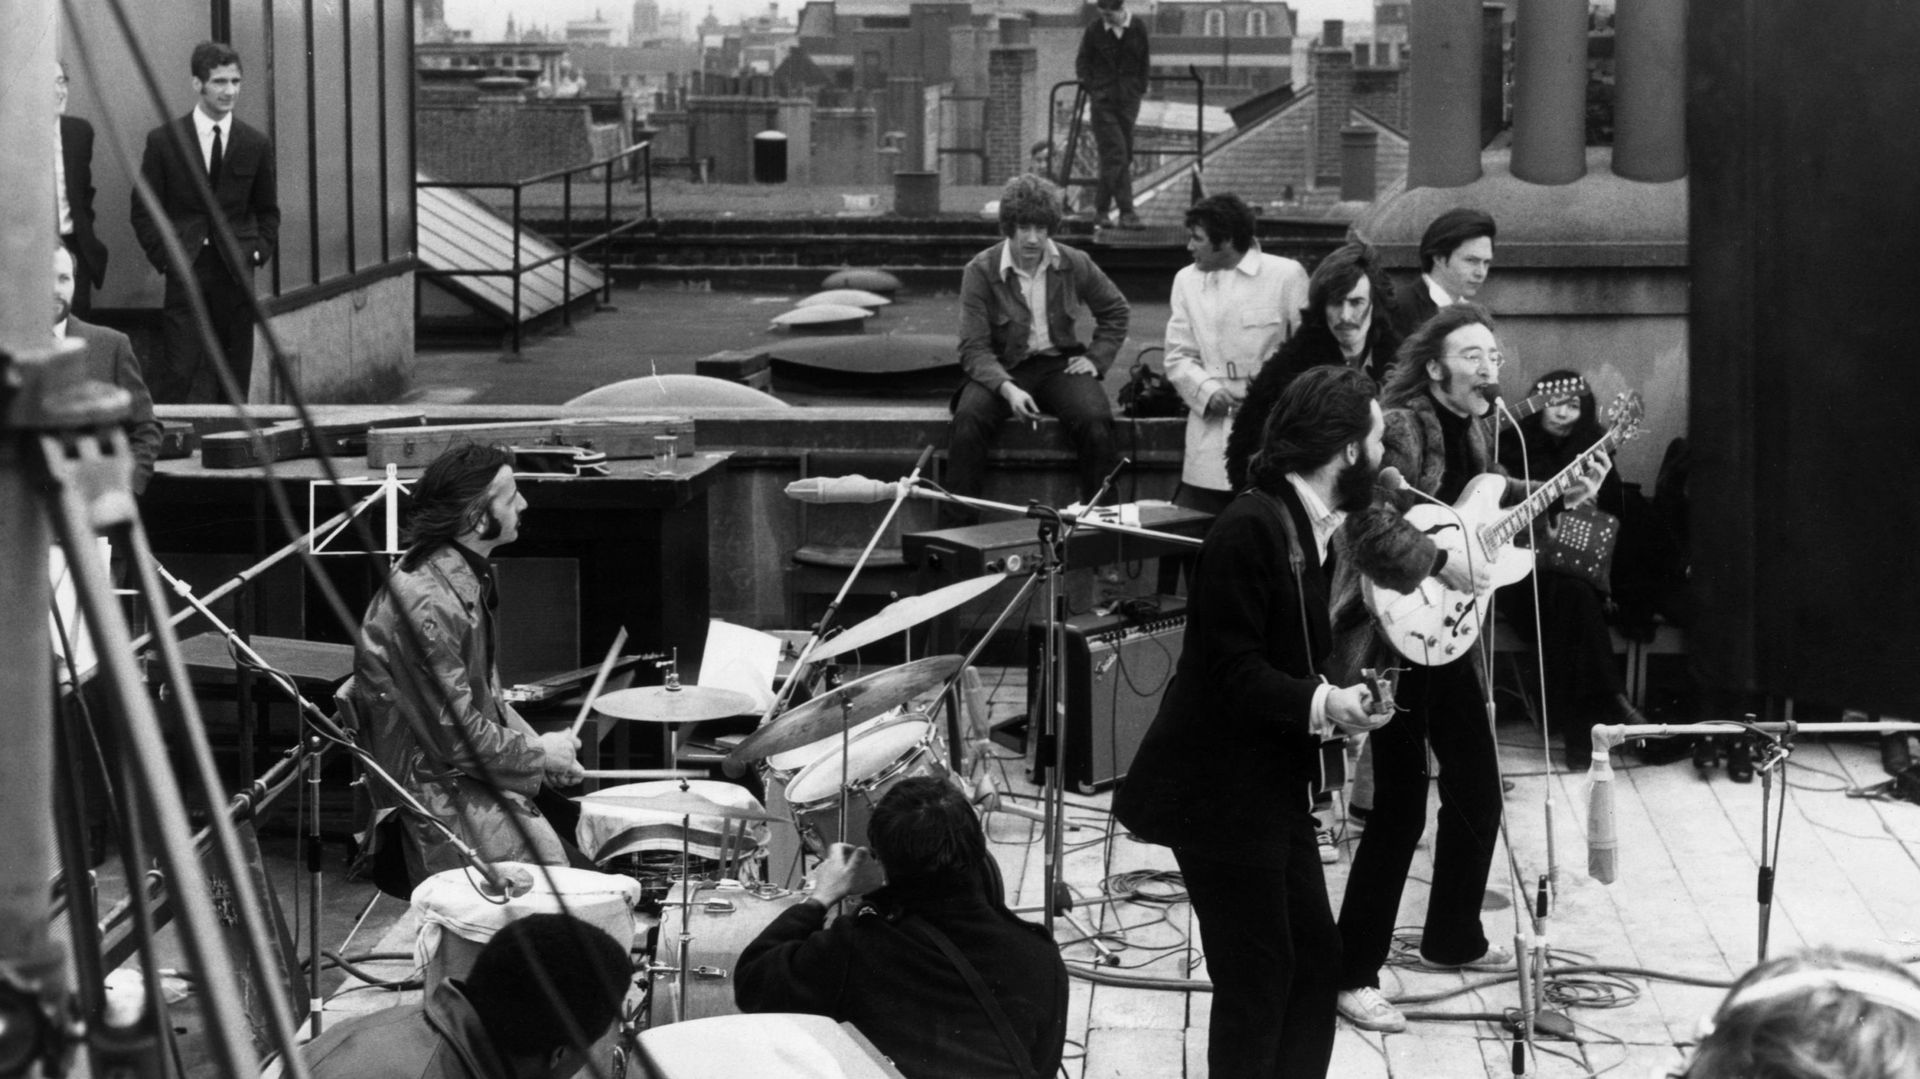 The Beatles : Get Back' : un livre officiel sur le dernier album du groupe  